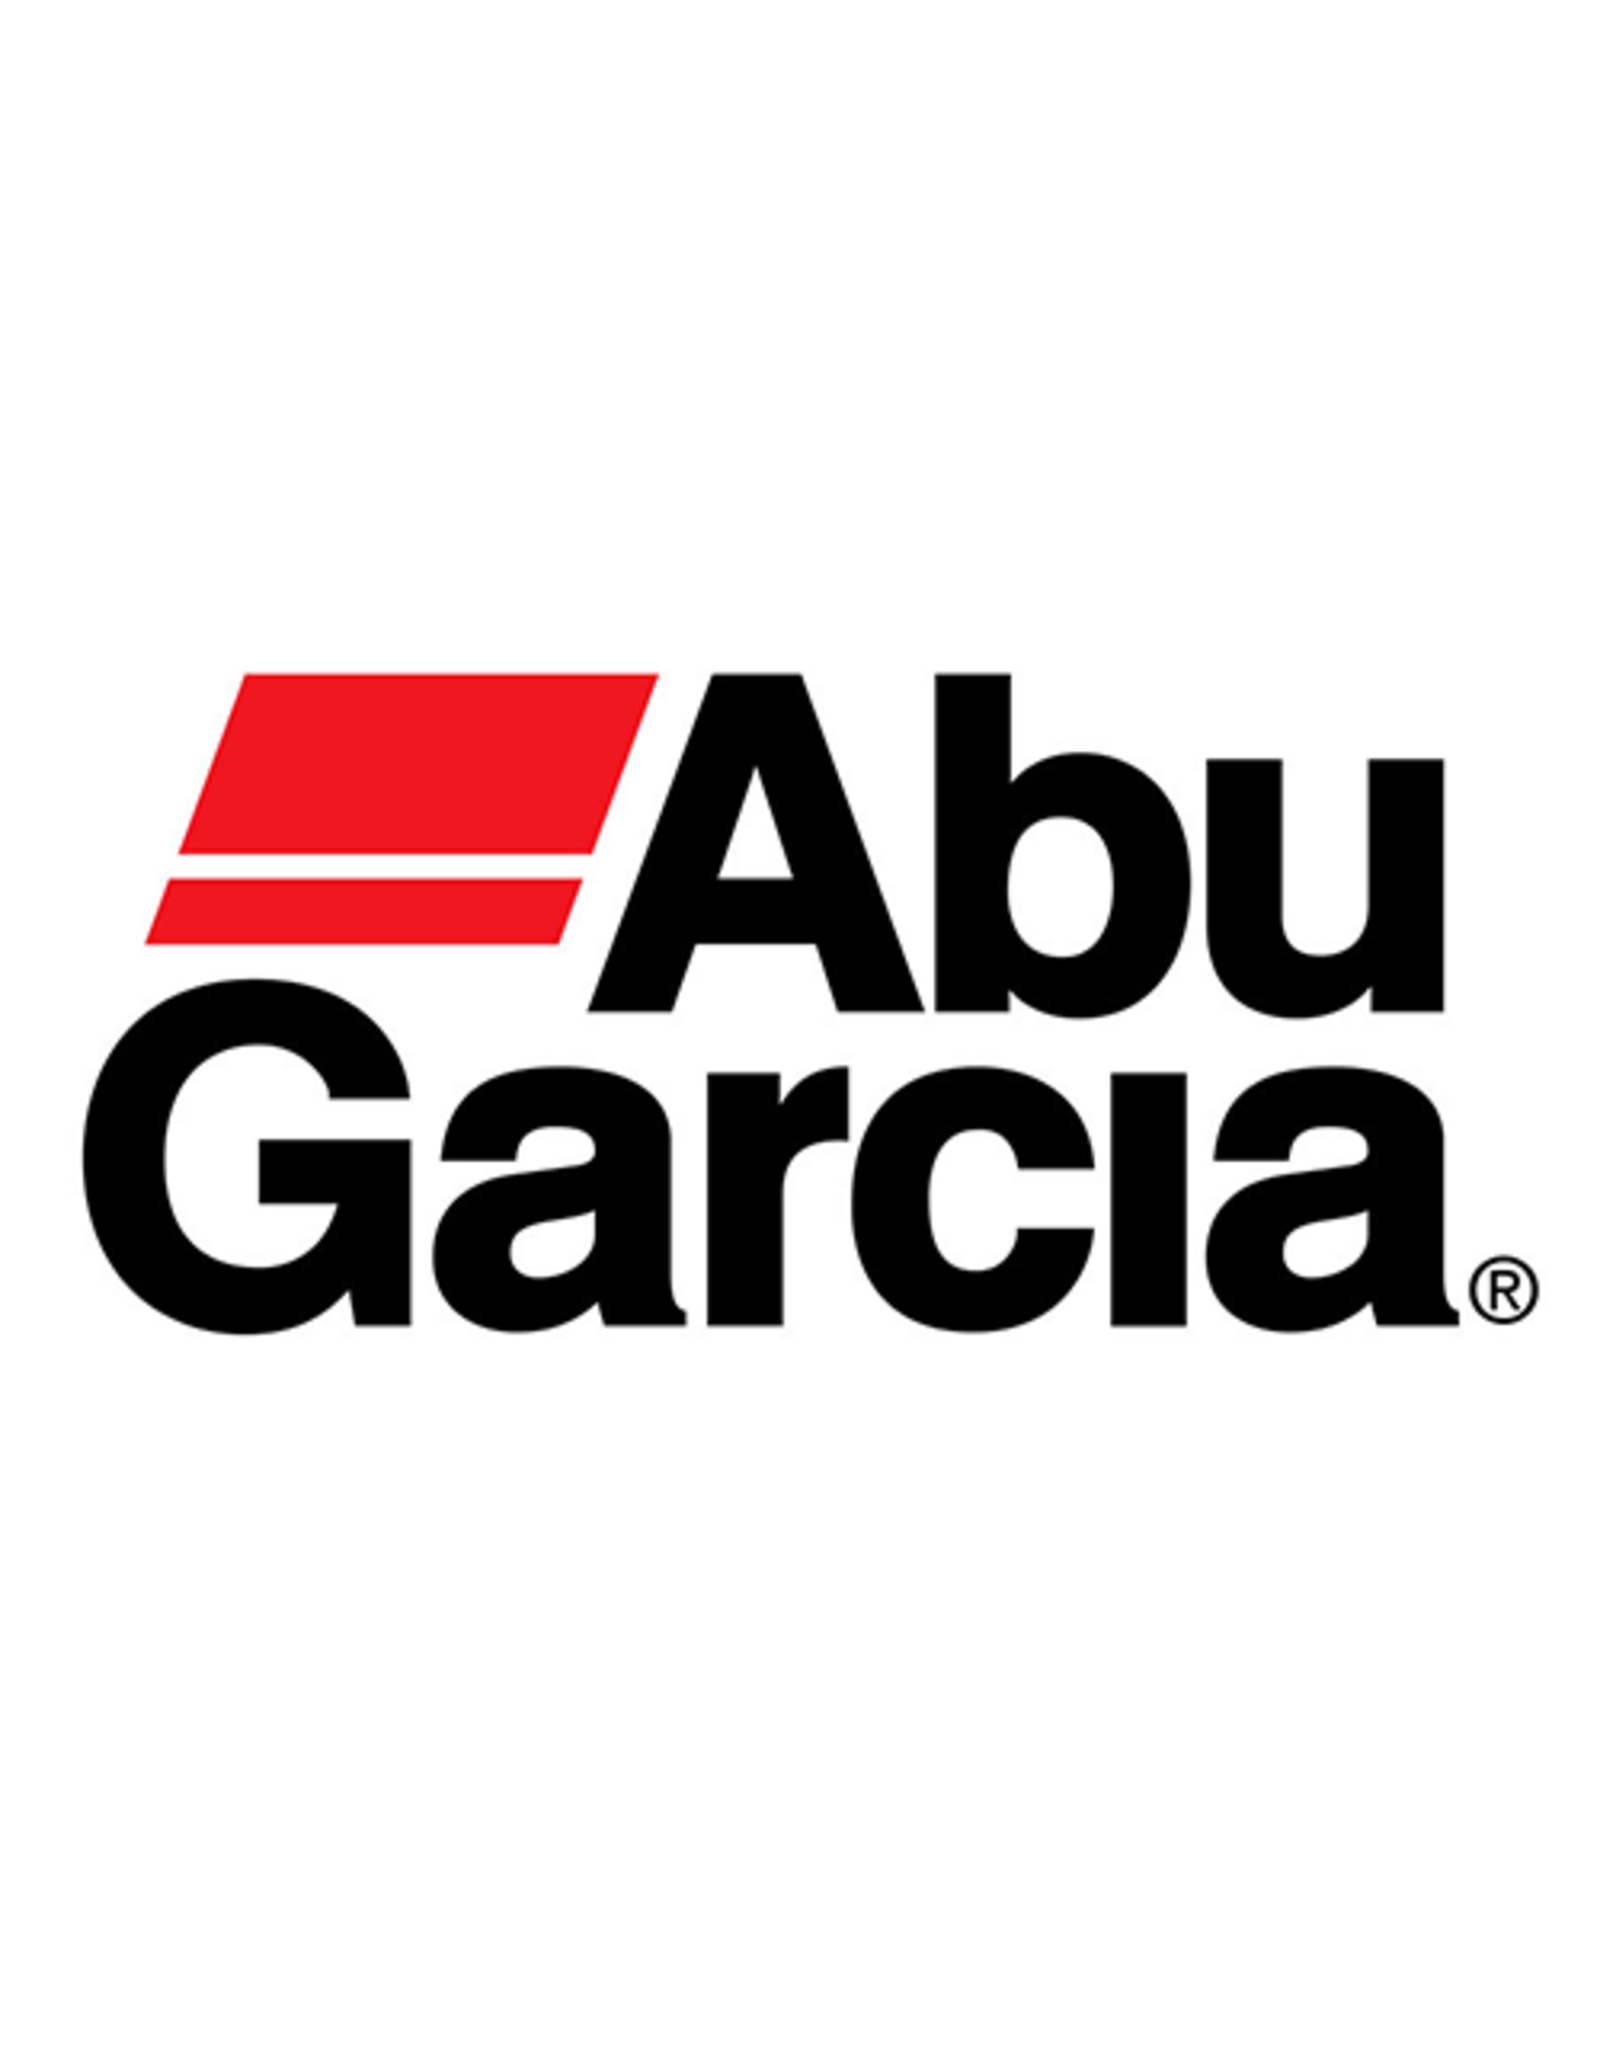 Abu Garcia 1411145  HANDLE ASSY